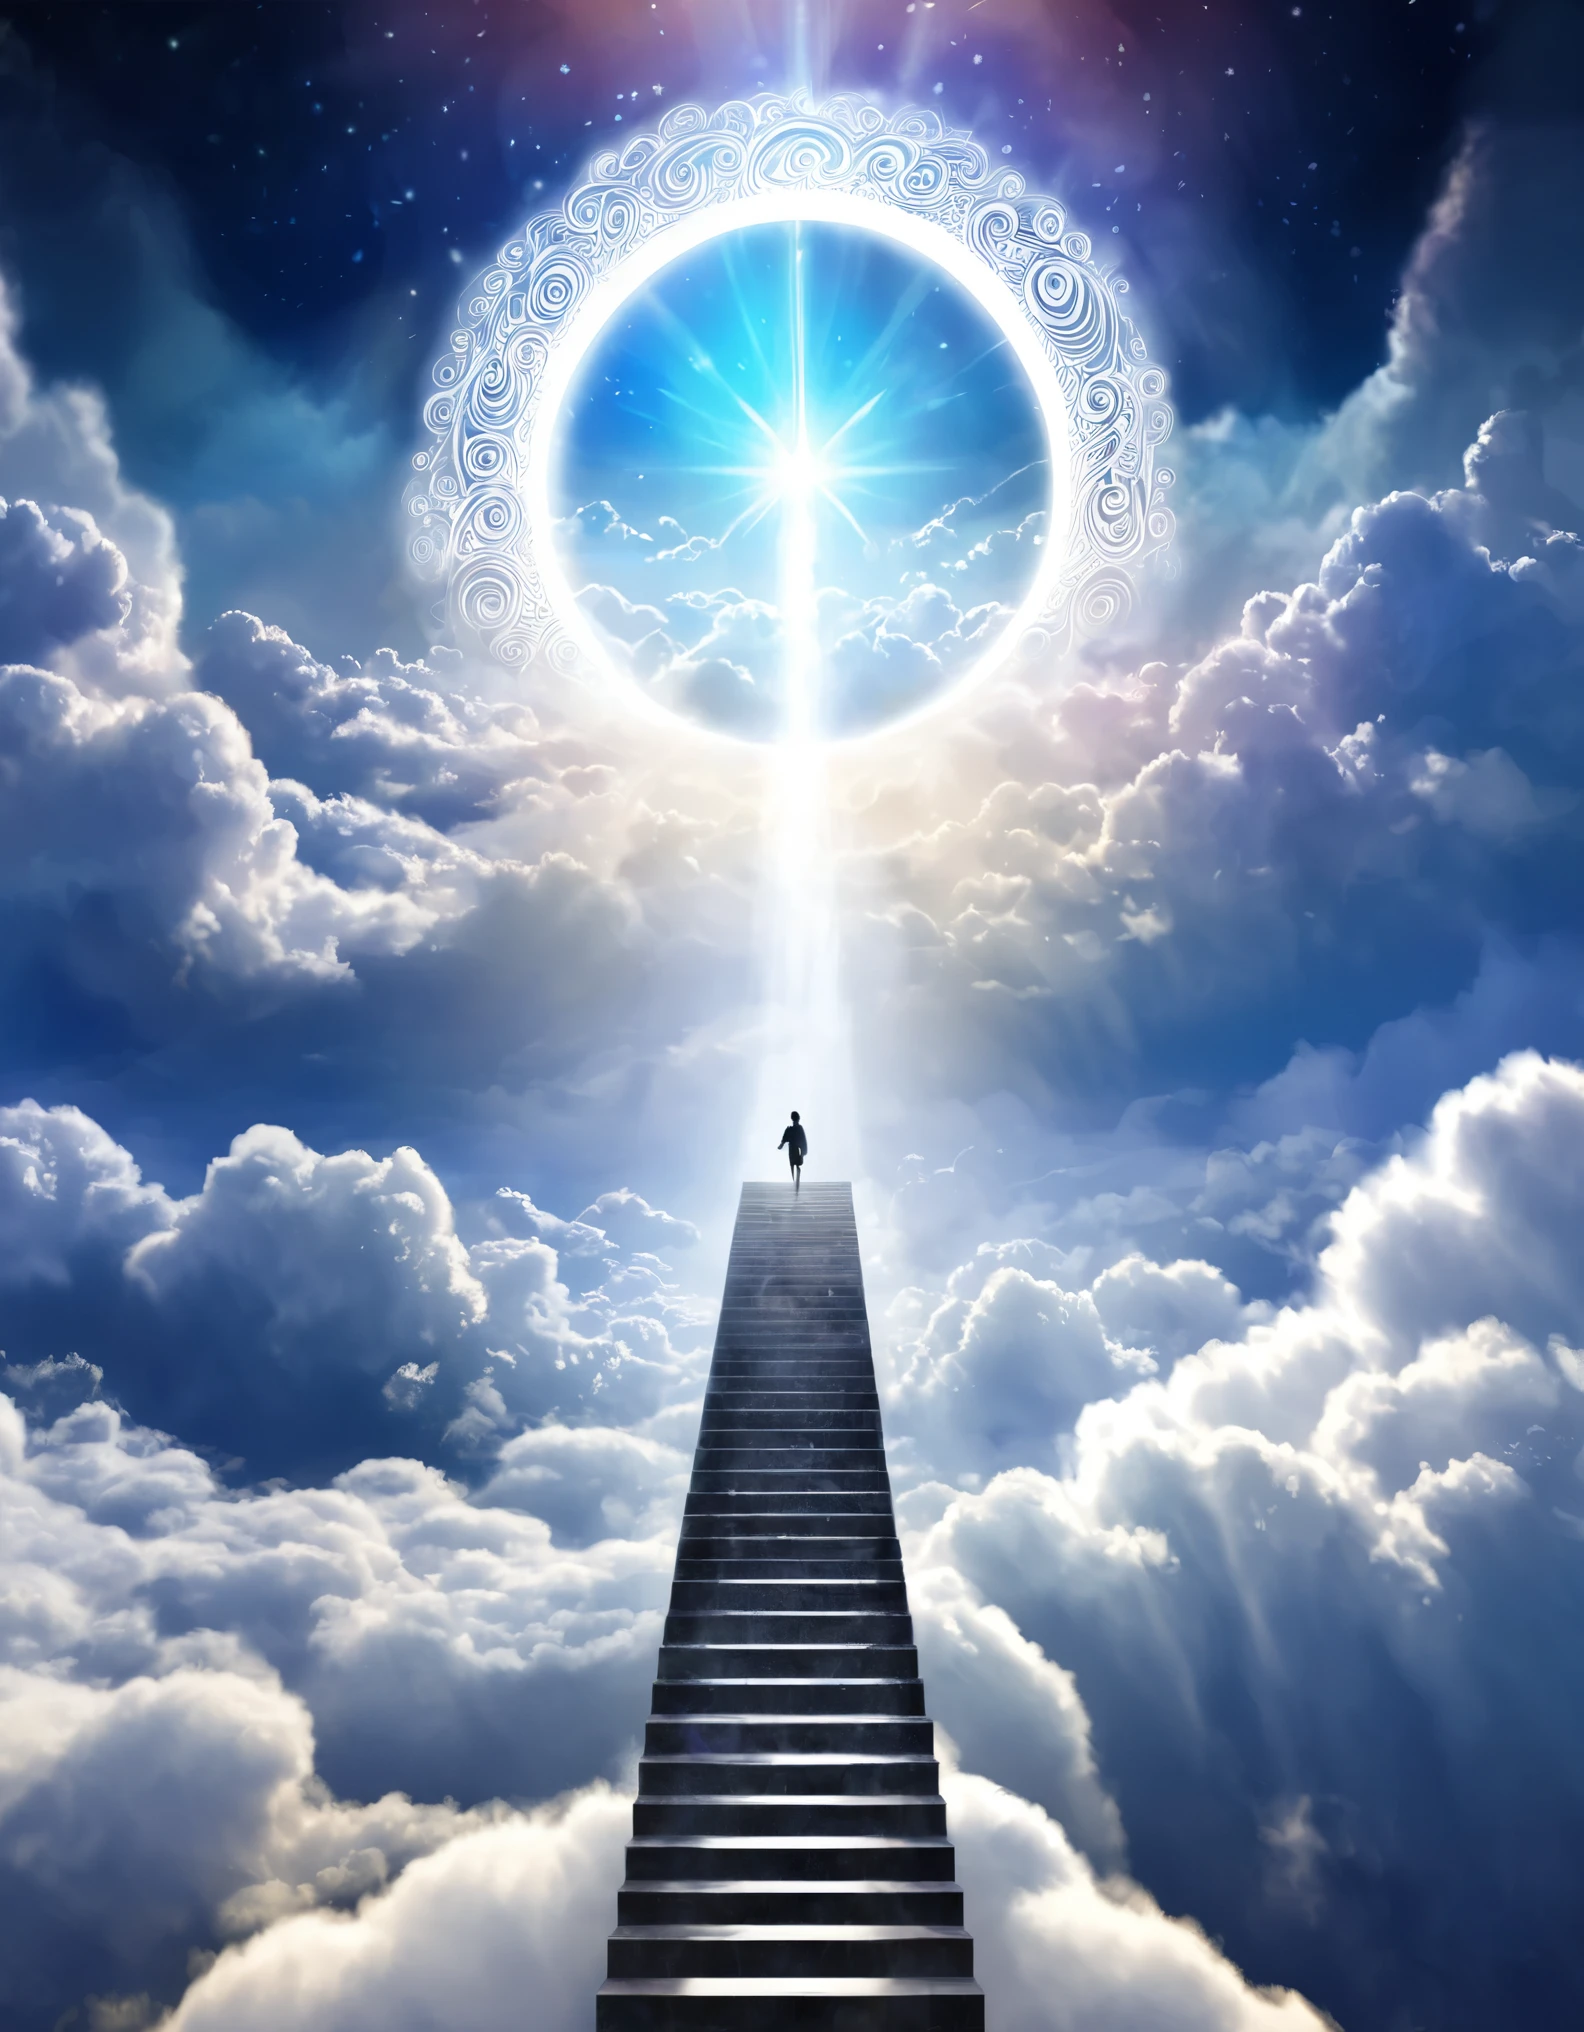 数字插图：一个人沿着云阶梯向上攀登，走向发光的天体门户, 代表升天日前往更高境界的旅程，爬坡道